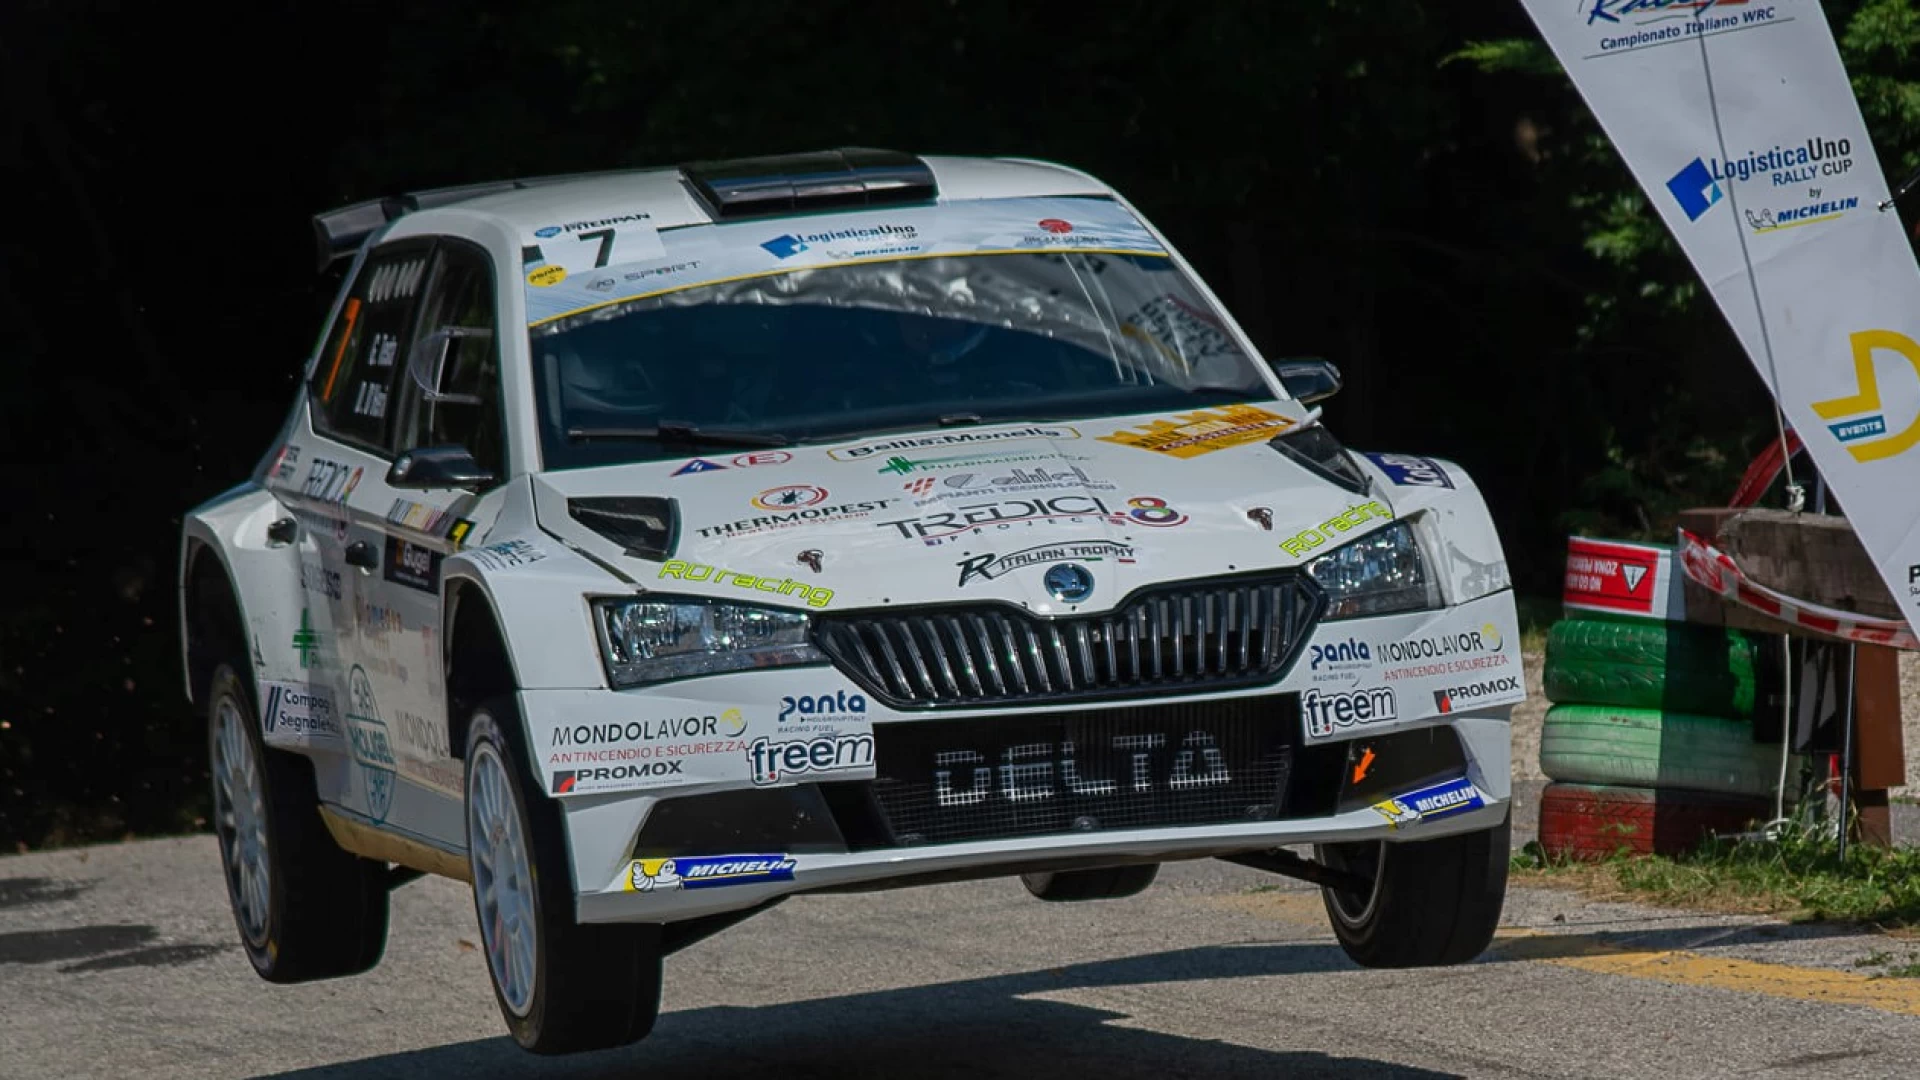 Rally della Marca Agrodolce per gli equipaggi Promox. Recchiuti costretto al ritiro. Giuseppe Testa torna primo nel Rally Cup Michelin.